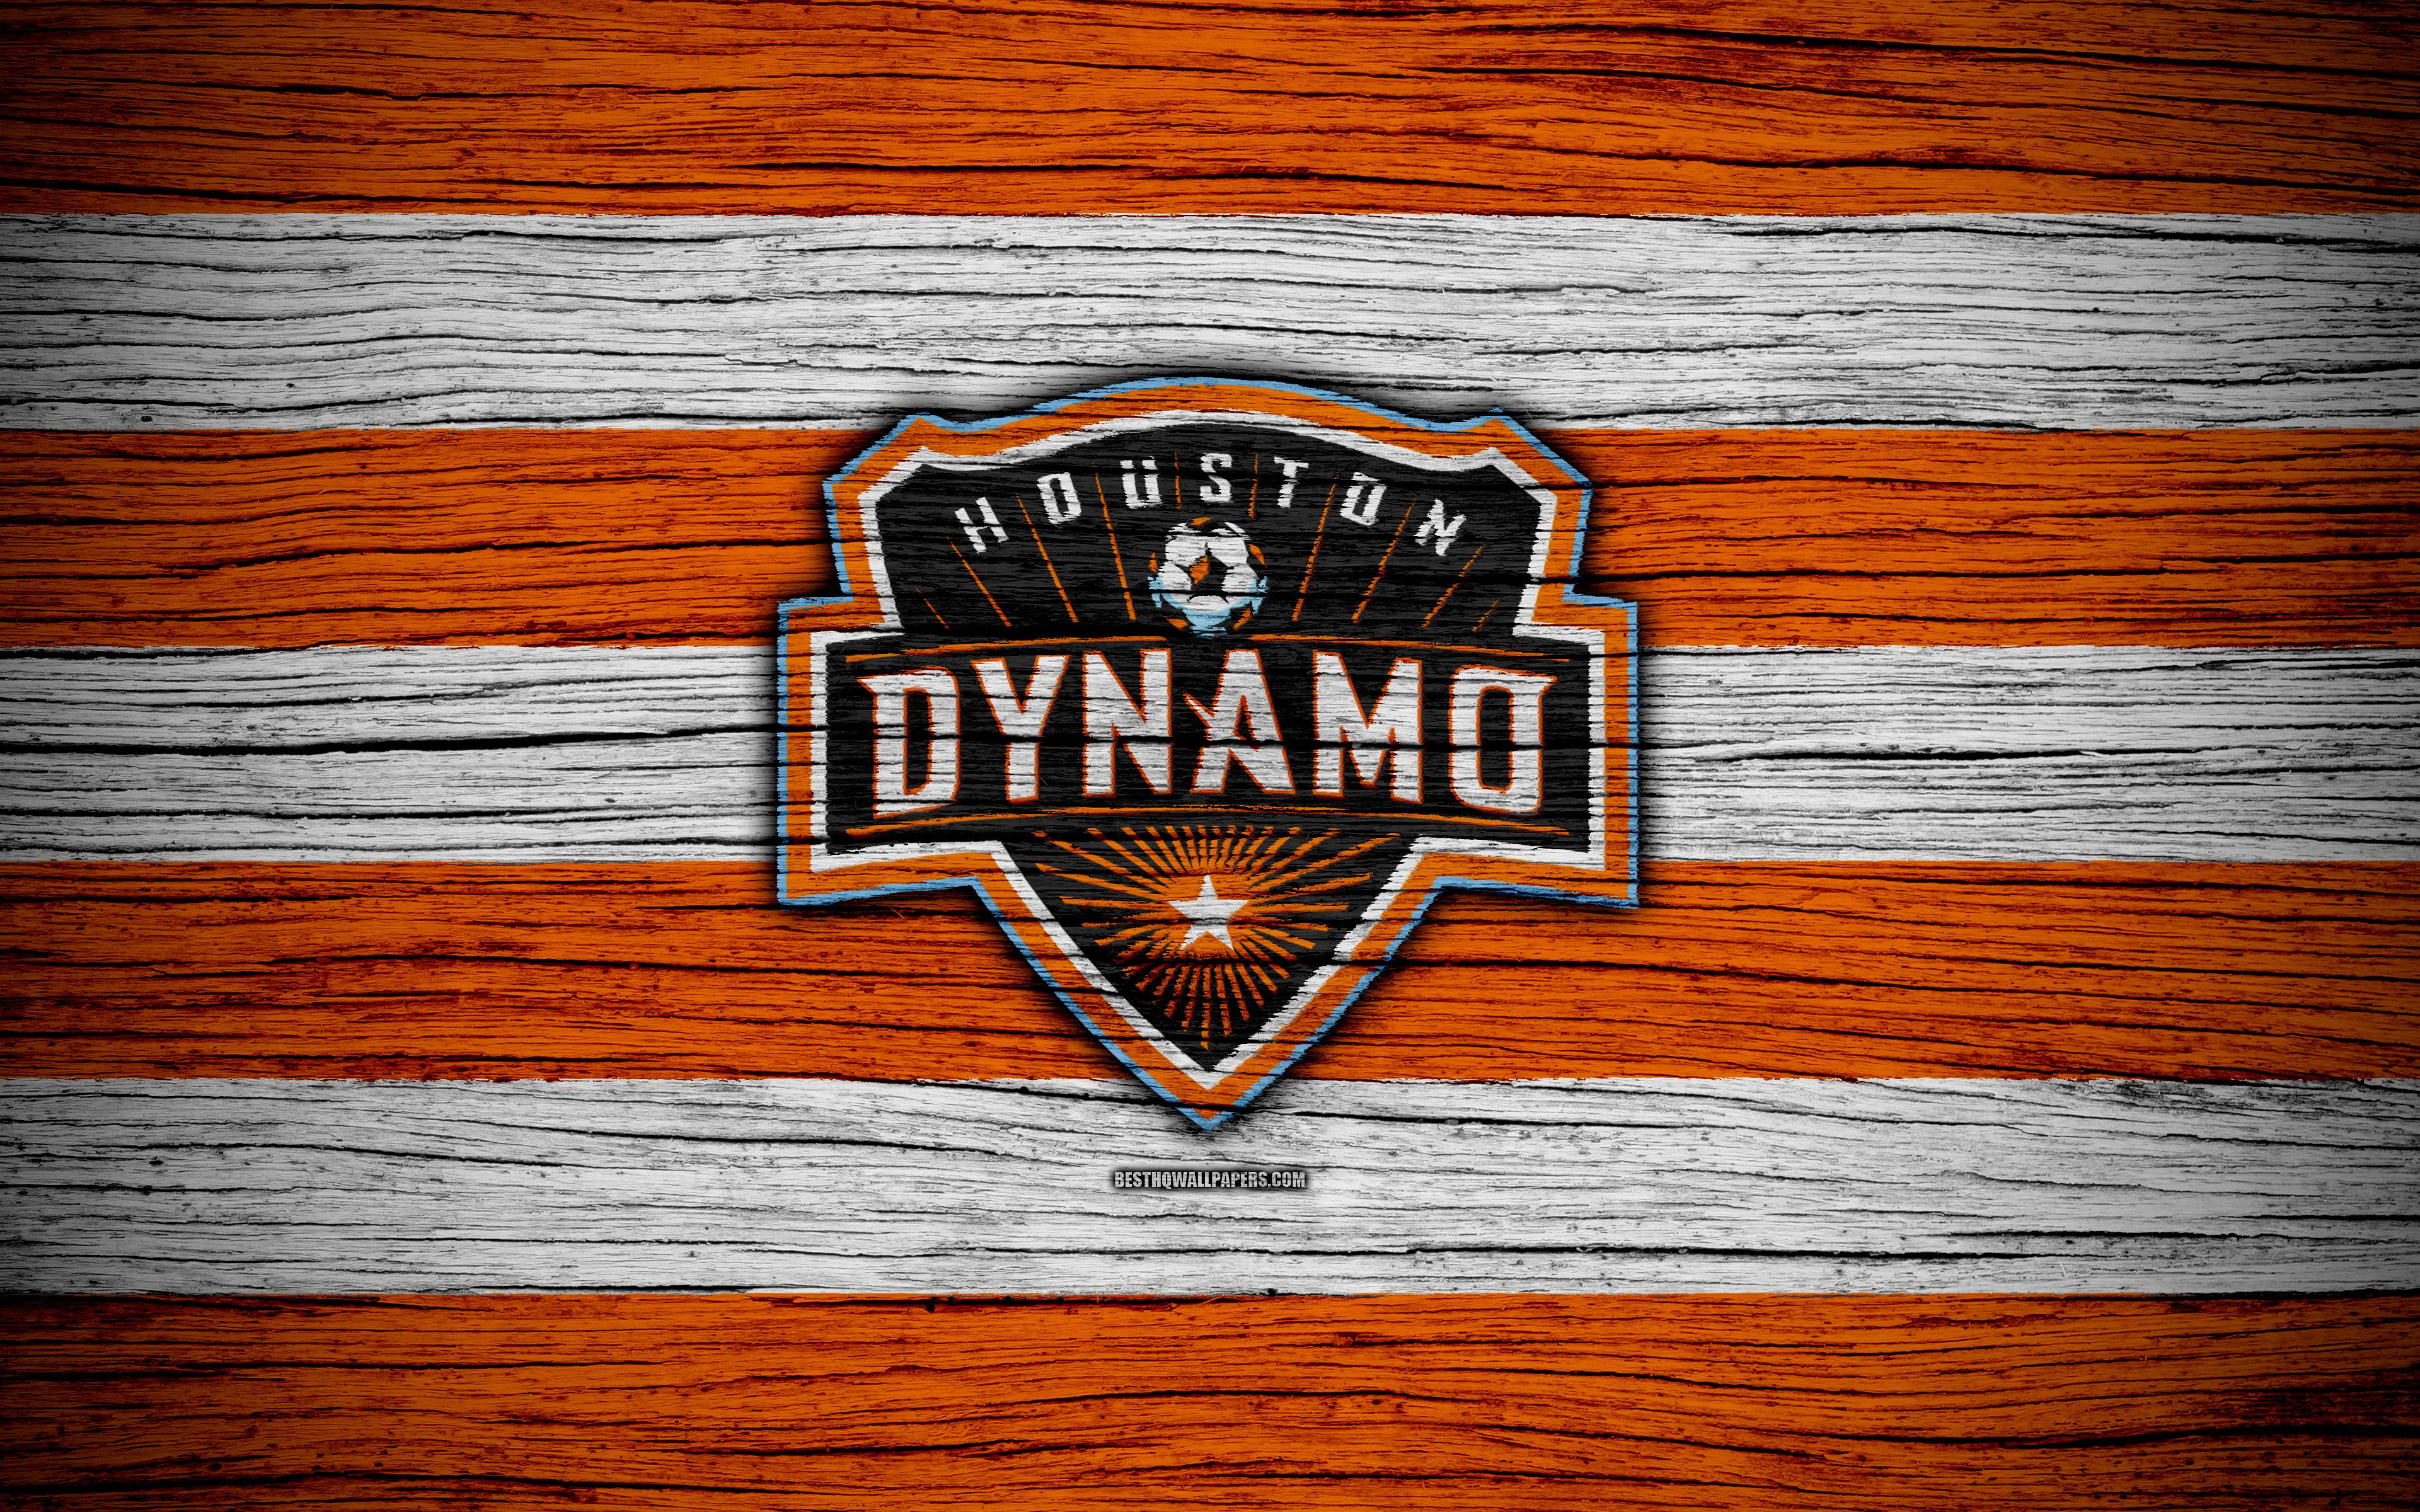 Download wallpaper Houston Dynamo, 4k, MLS, wooden texture, Western